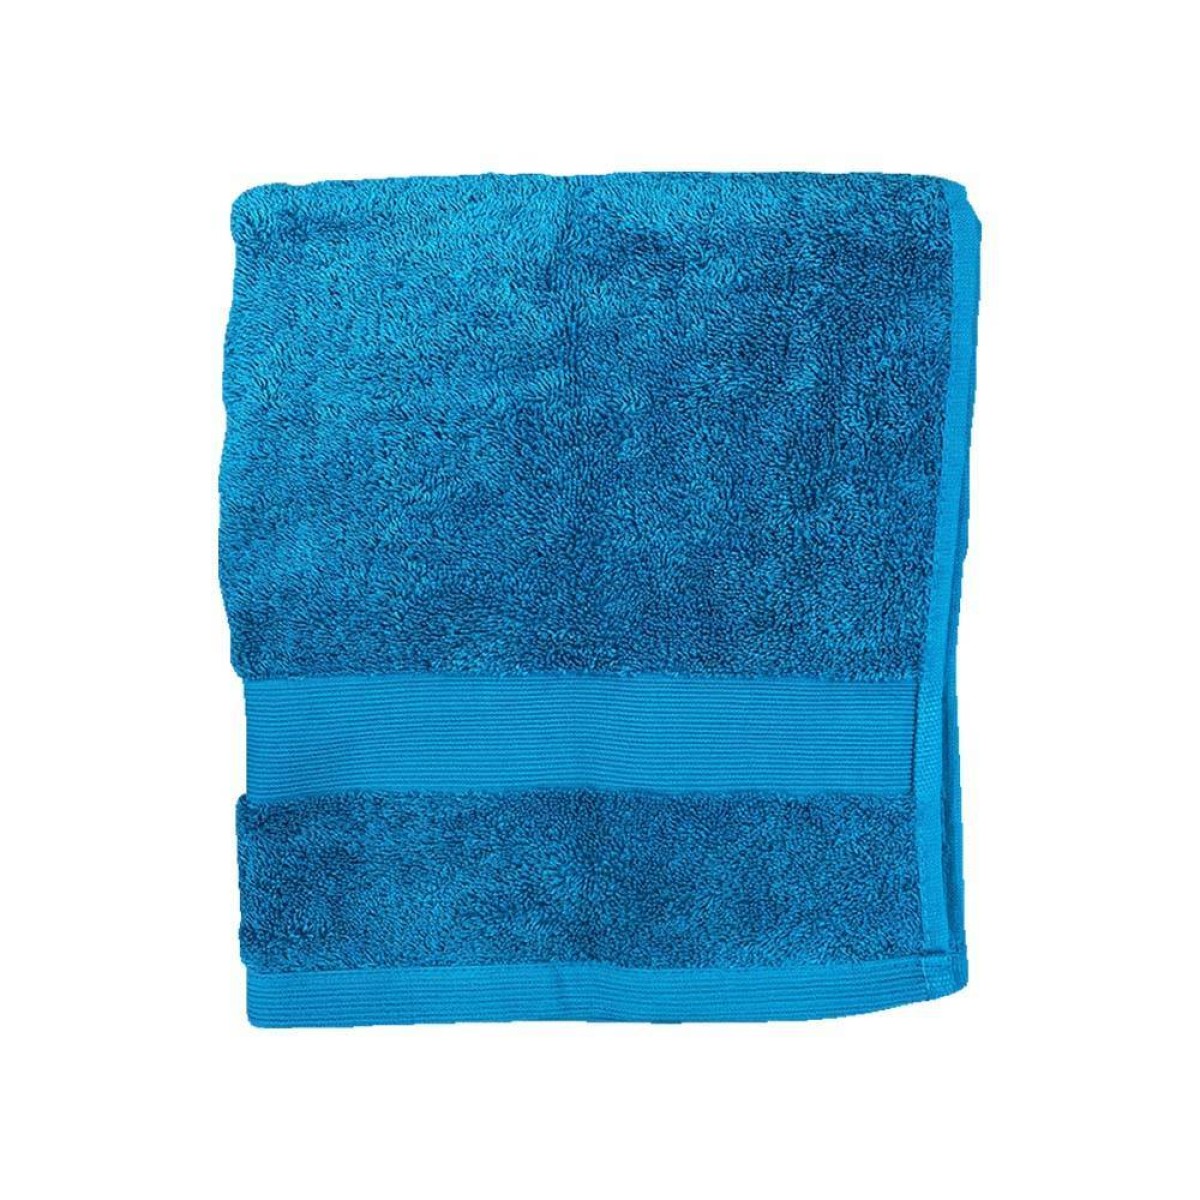 Πετσέτα Προσώπου 600grs (50x90) 100% Βαμβάκι με μπορντούρα με ανάγλυφες ρίγες οινοπνευματί χρώμα TNS 39-950-0414-4